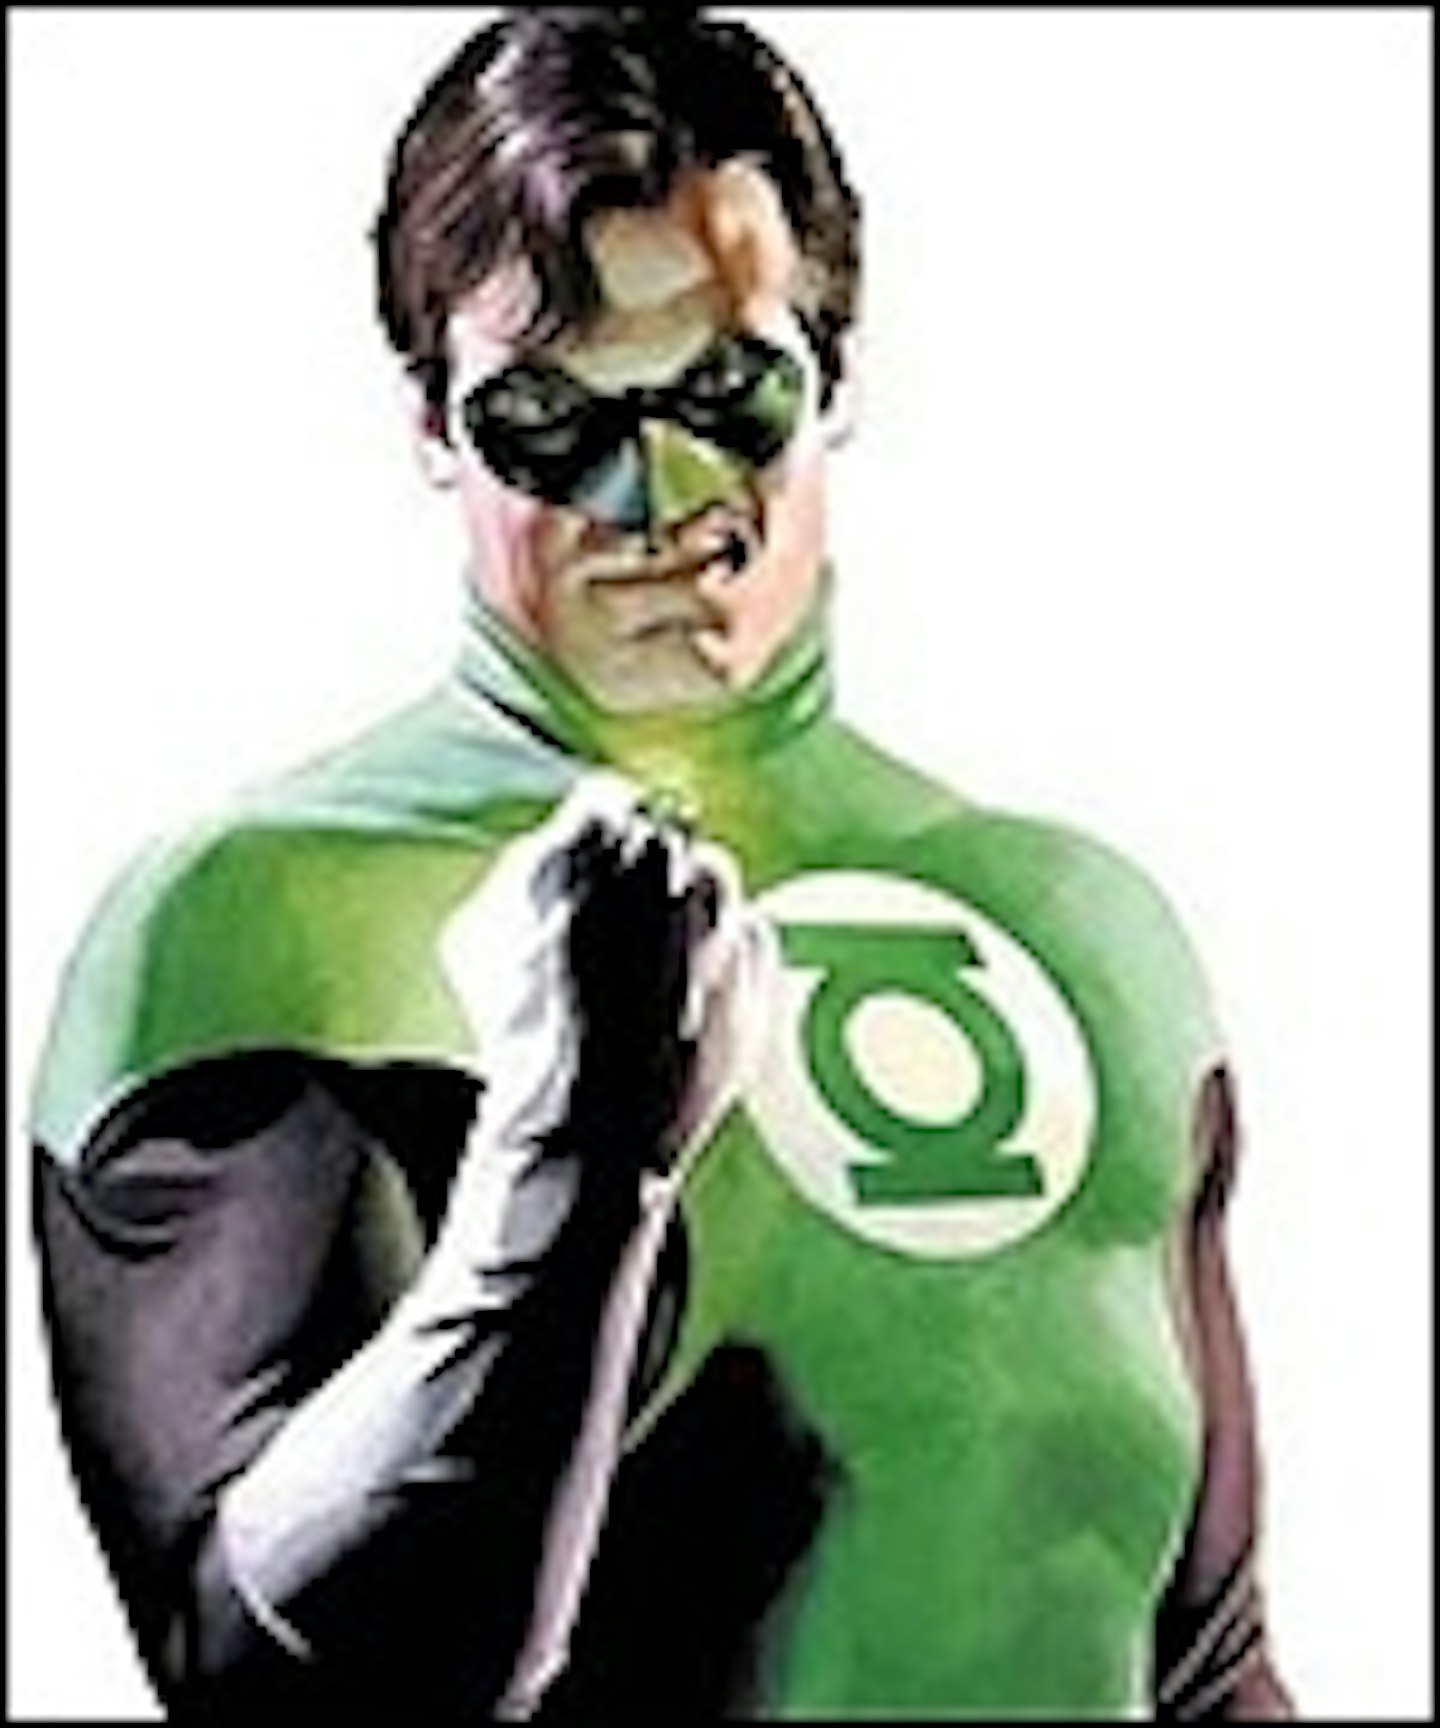 Green Lantern Power Ring Up